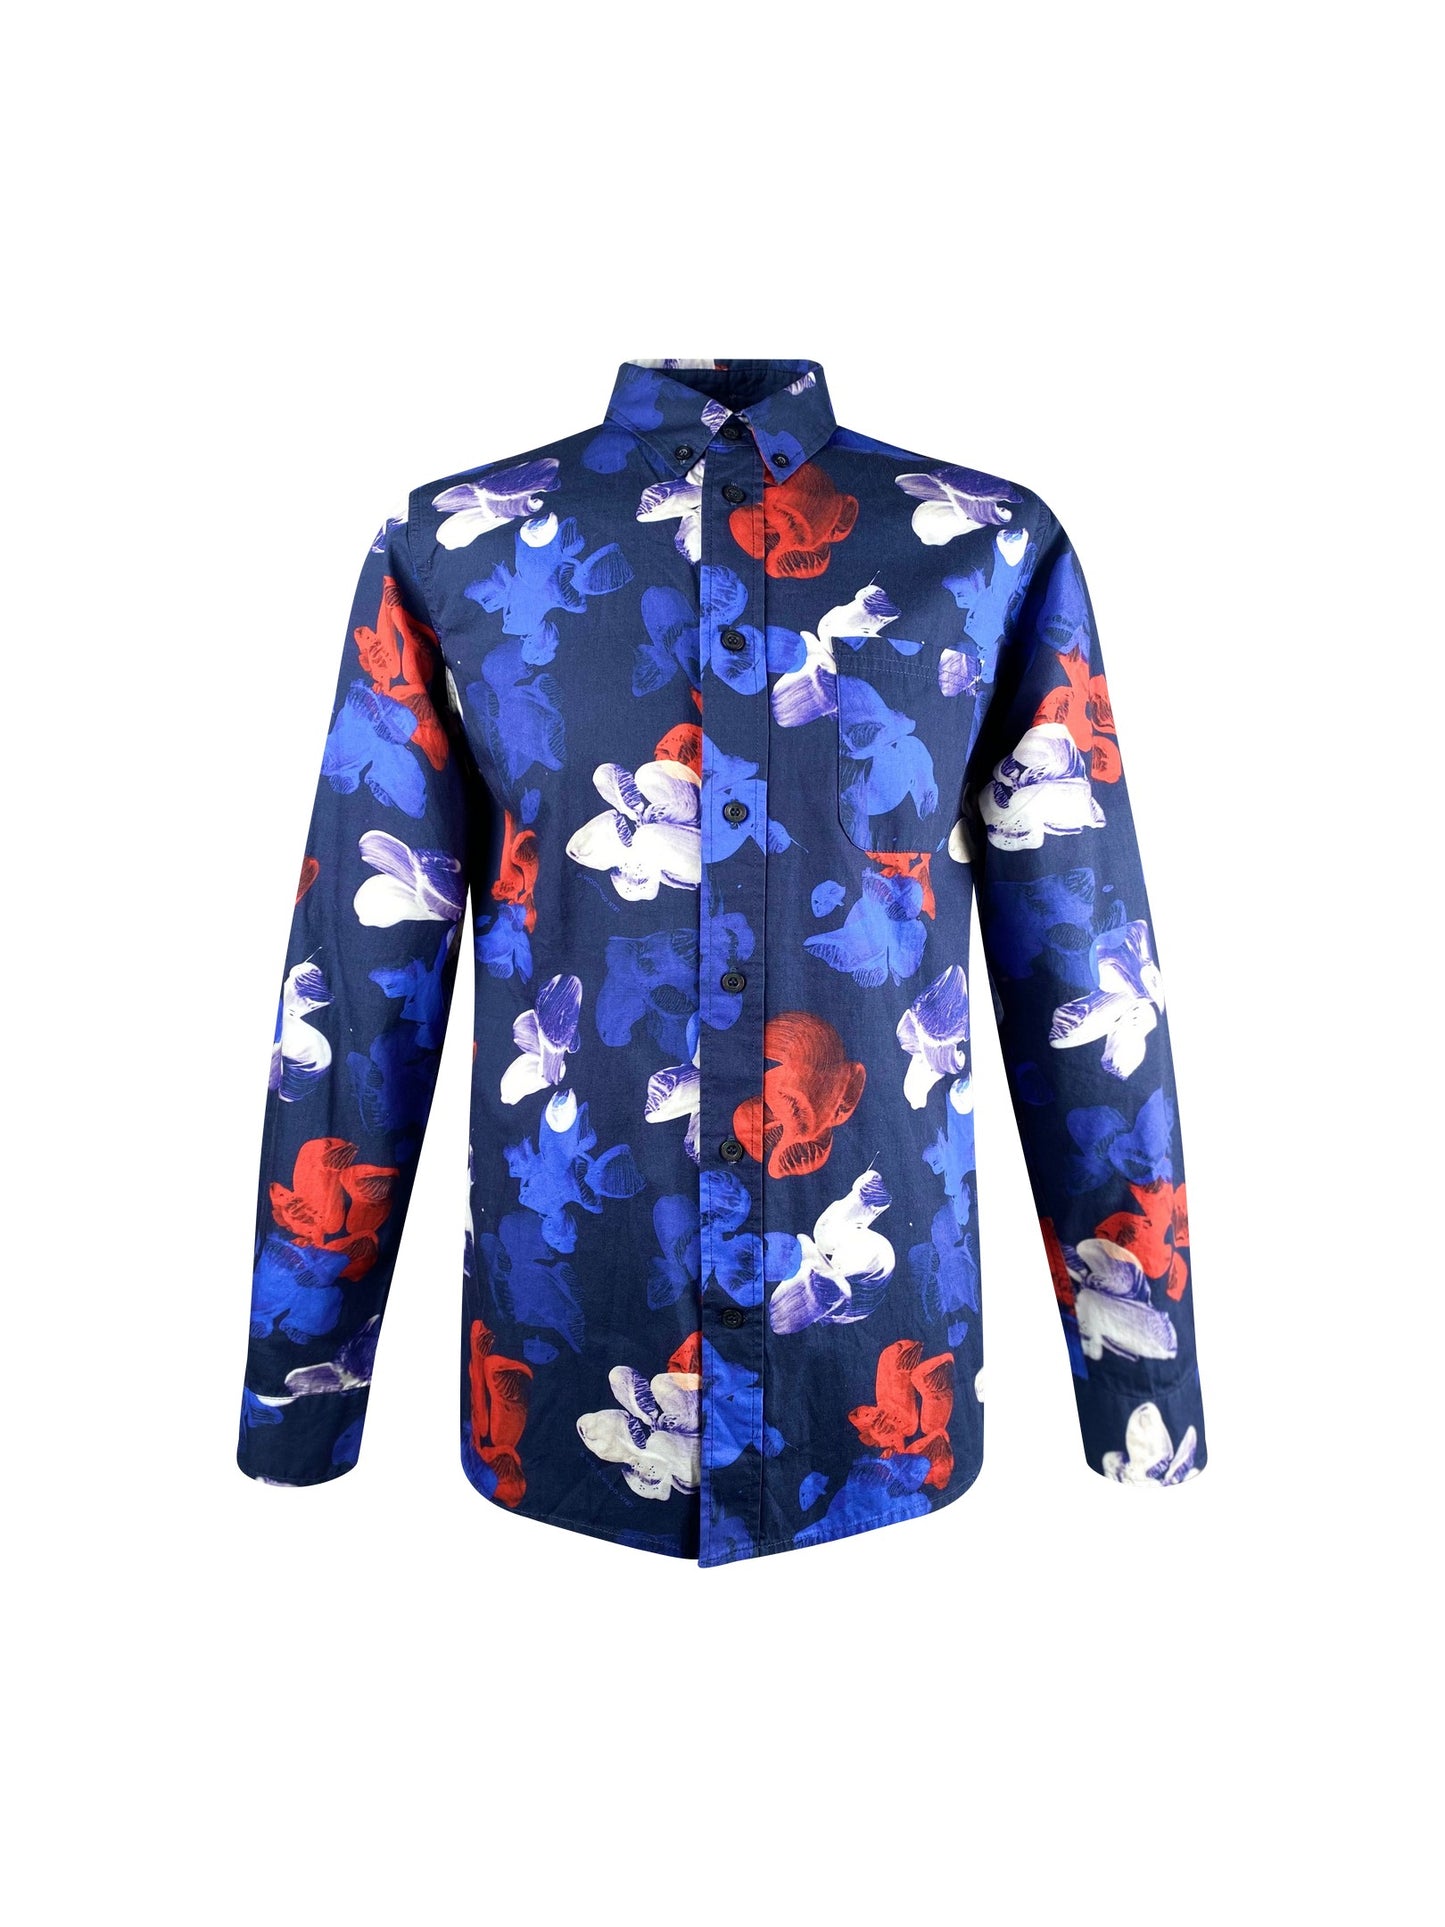 Wood Wood Hemd “Paradinski Shirt” -blueKlassisches Herrenhemd von Wood Wood.  Details:   Langarm mit Manschette und Schlitz Button Down Kragen blau mit  Blumen allover in weiß, blau, rot